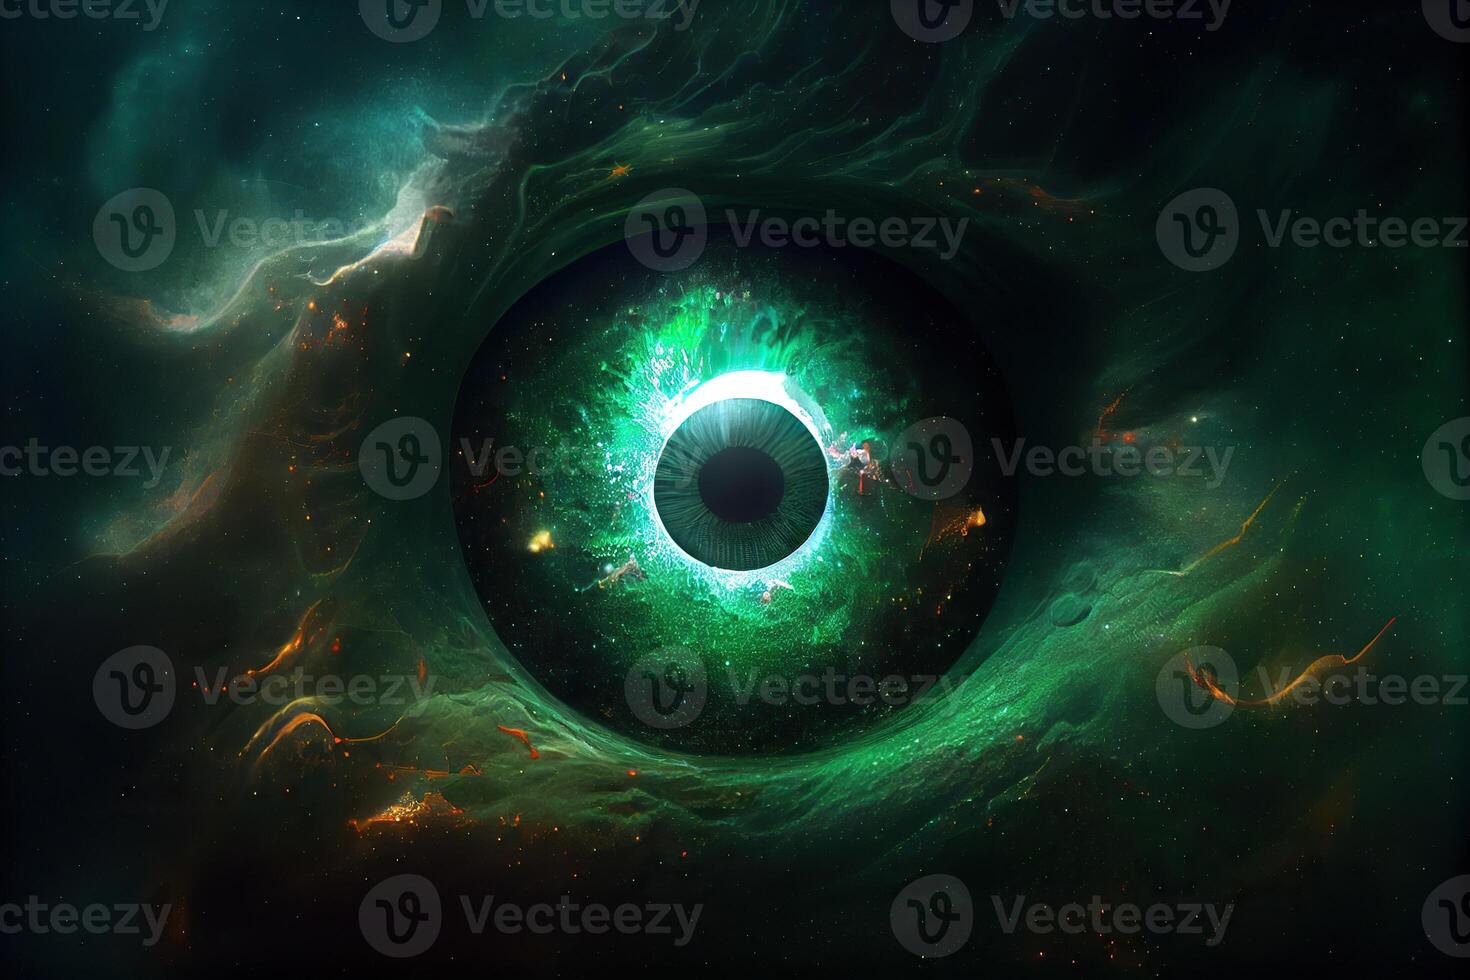 generativ ai illustration av en kosmisk varelse, varje öga är en neutron stjärna, hans mun är en svart hål, och han ger av en malakit grön aura foto